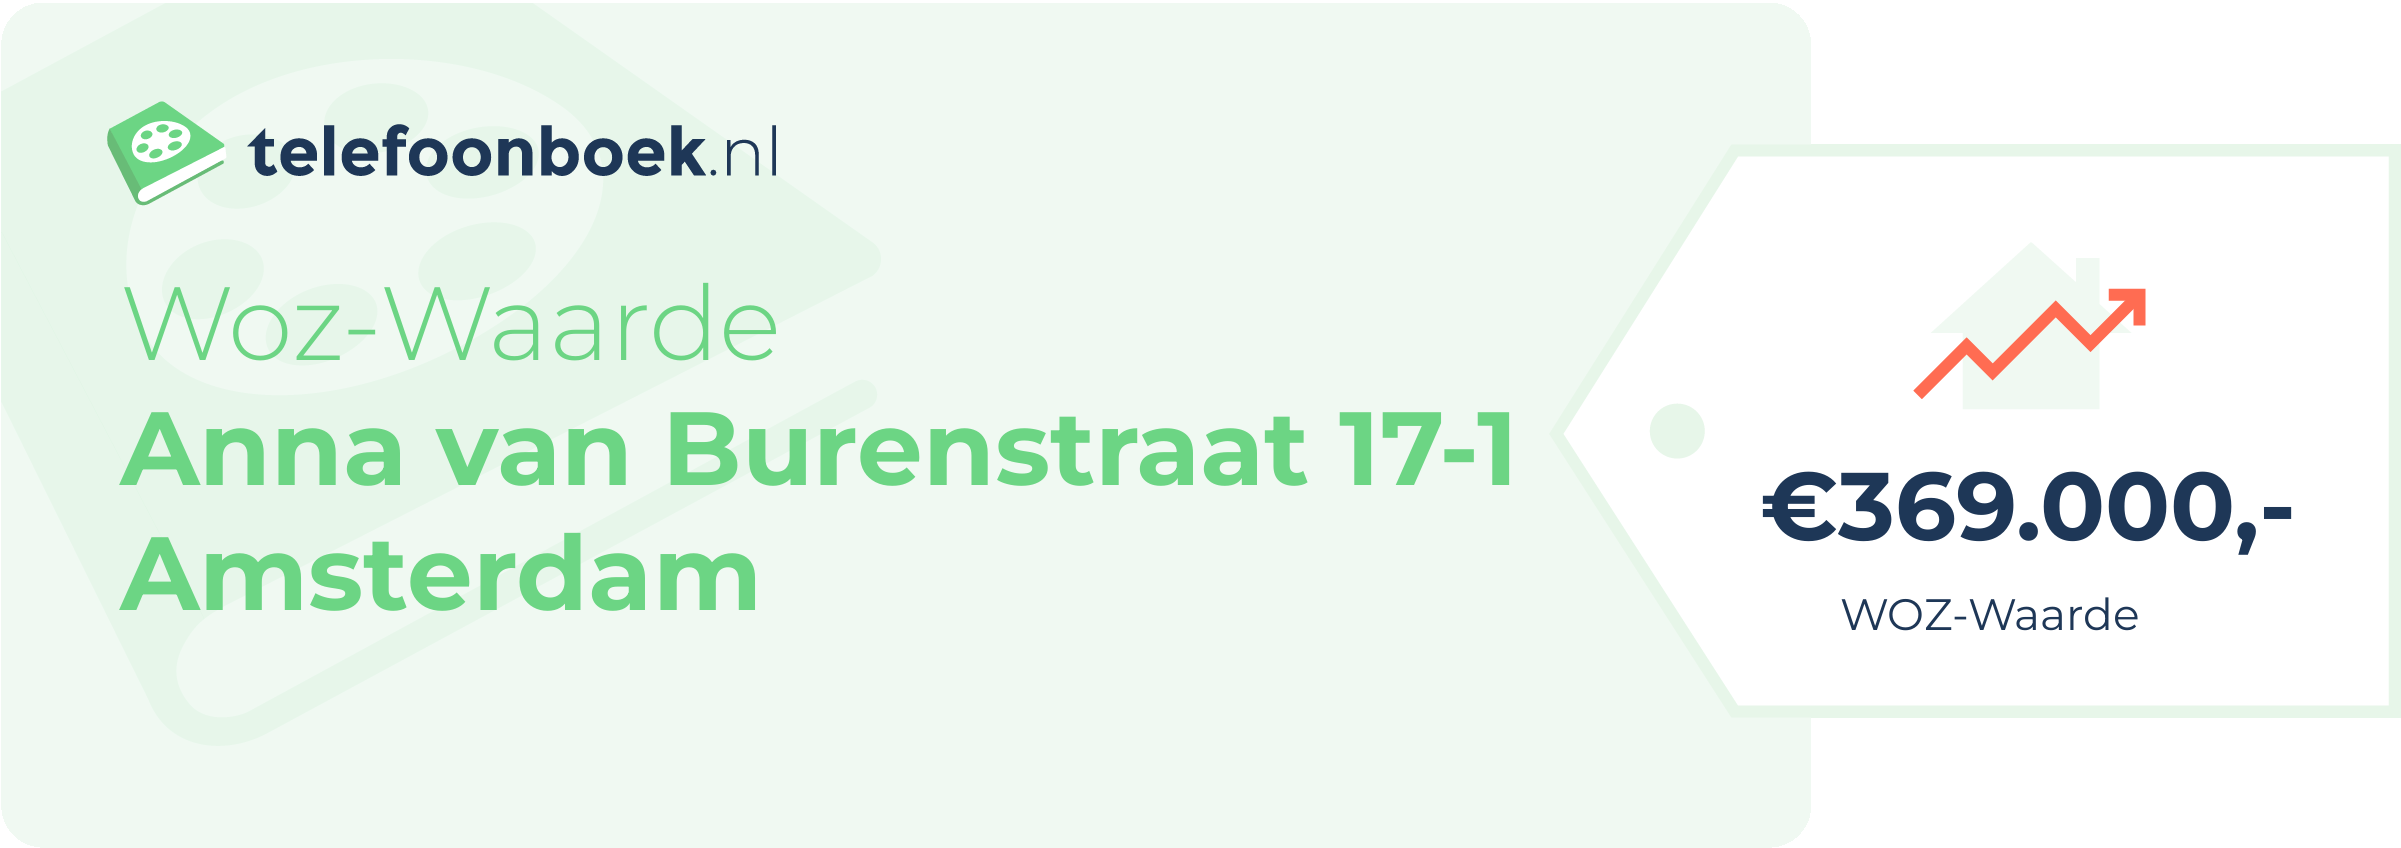 WOZ-waarde Anna Van Burenstraat 17-1 Amsterdam